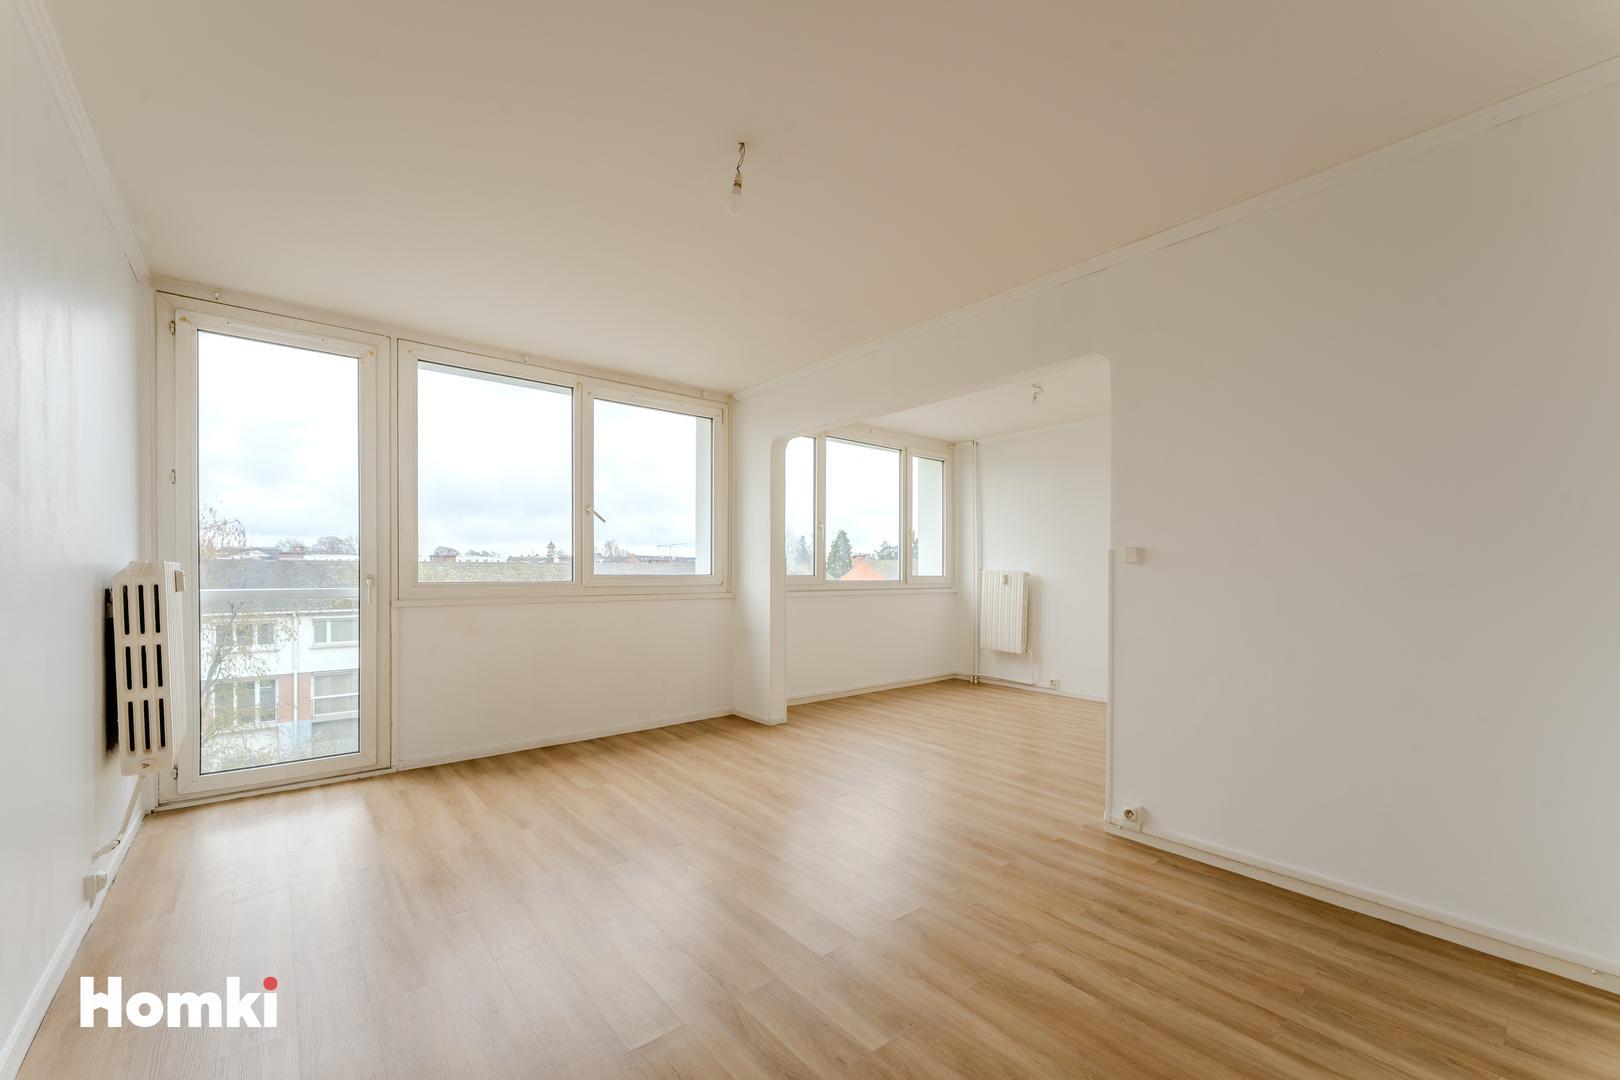 Homki - Vente Appartement  de 69.0 m² à Lys-lez-Lannoy 59390